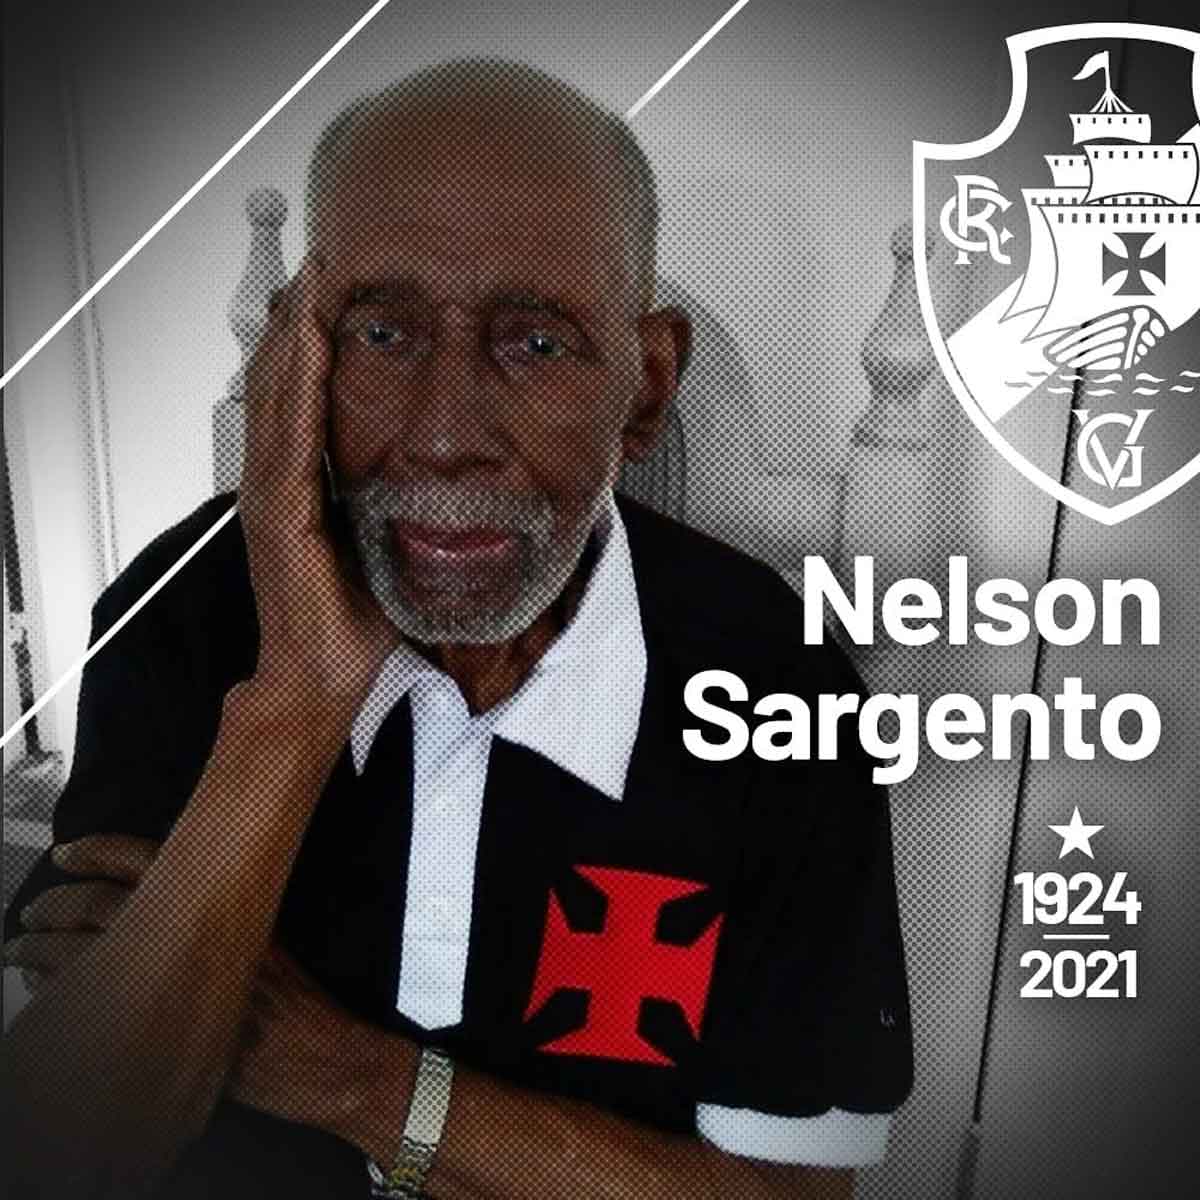 Morre Nelson Sargento, torcedor do Vasco